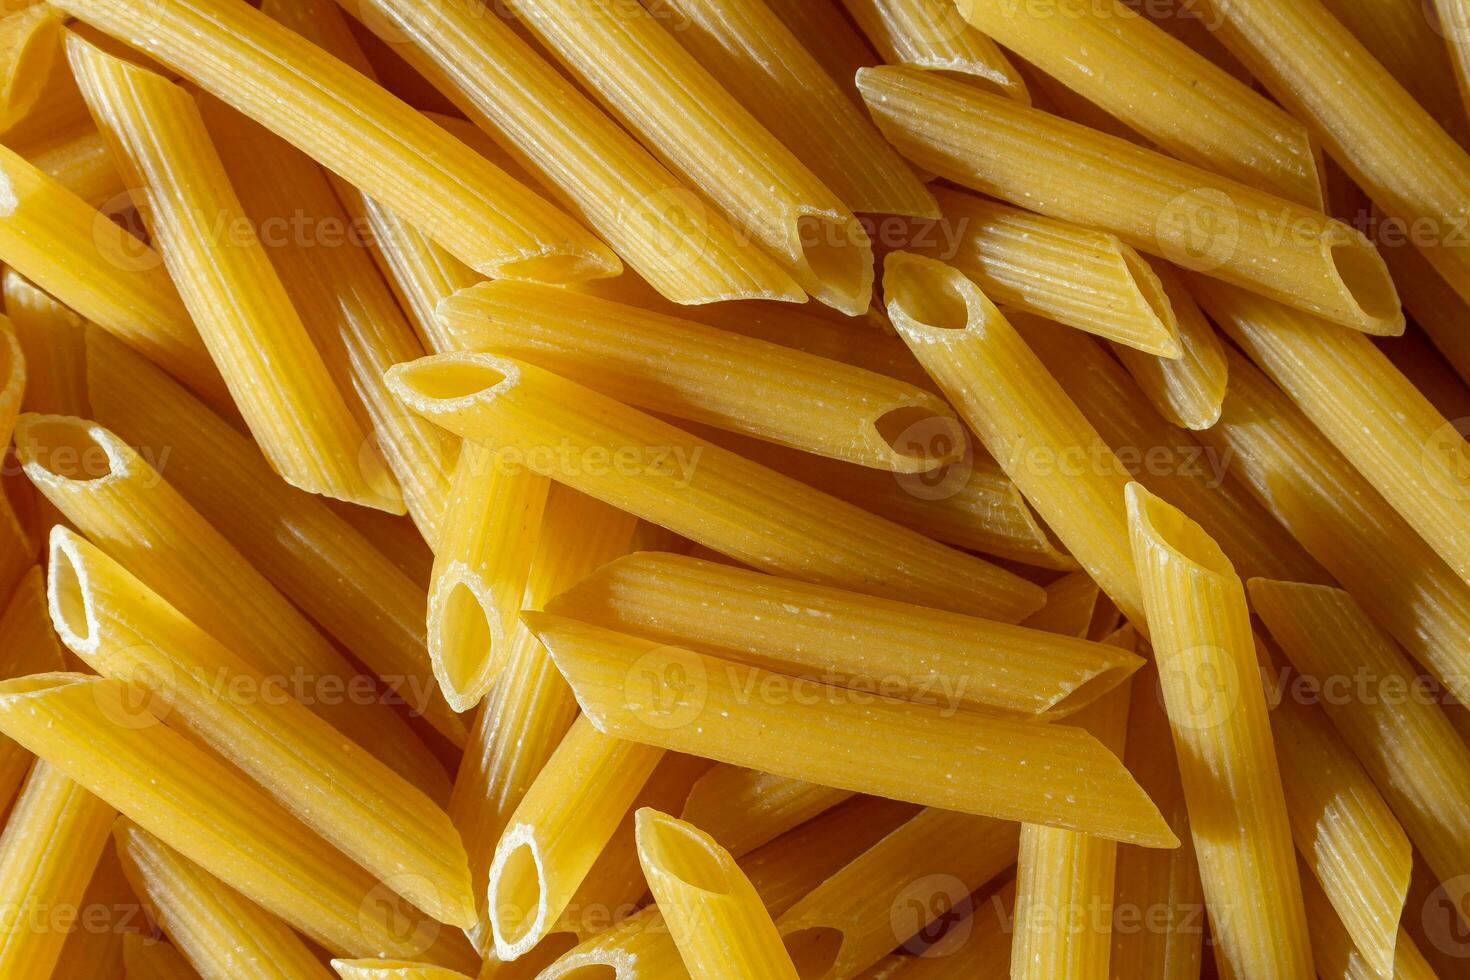 ongekookt penne rigeren pasta. een culinaire canvas van penne macaroni, creëren een levendig en getextureerde achtergrond voor fijnproever Koken. droog pasta. rauw macaroni - top visie, vlak leggen foto